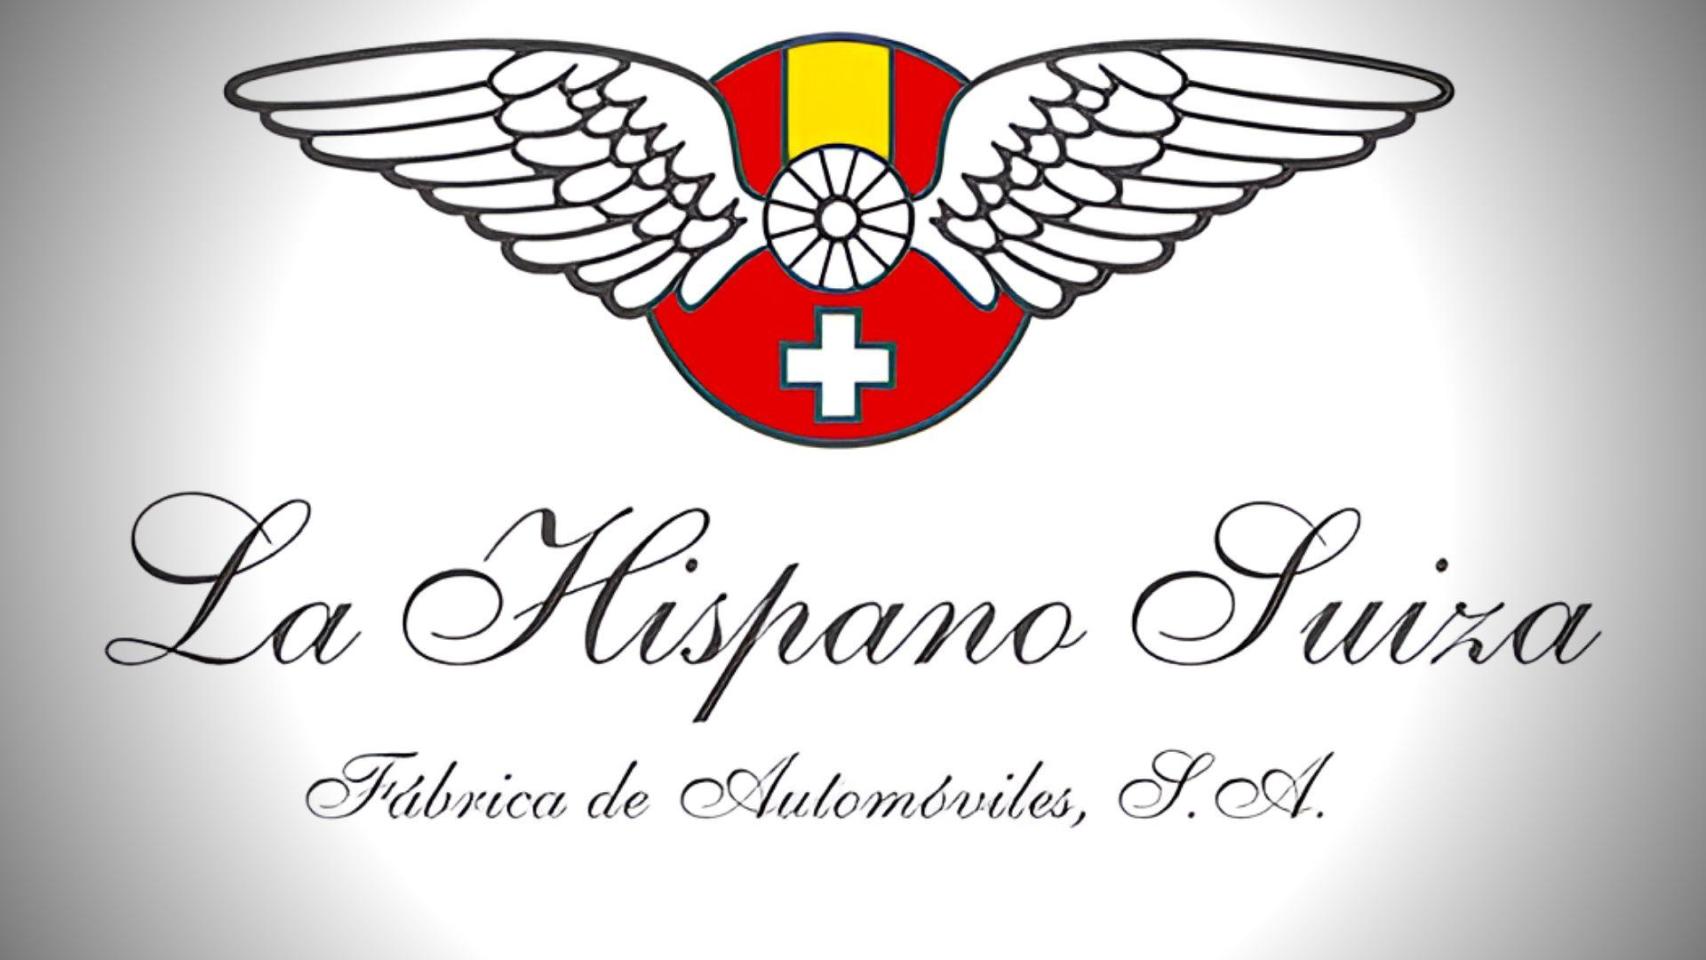 La marca iniciada por un gallego que plantó cara a Mercedes y Rolls Royce: La Hispano-Suiza